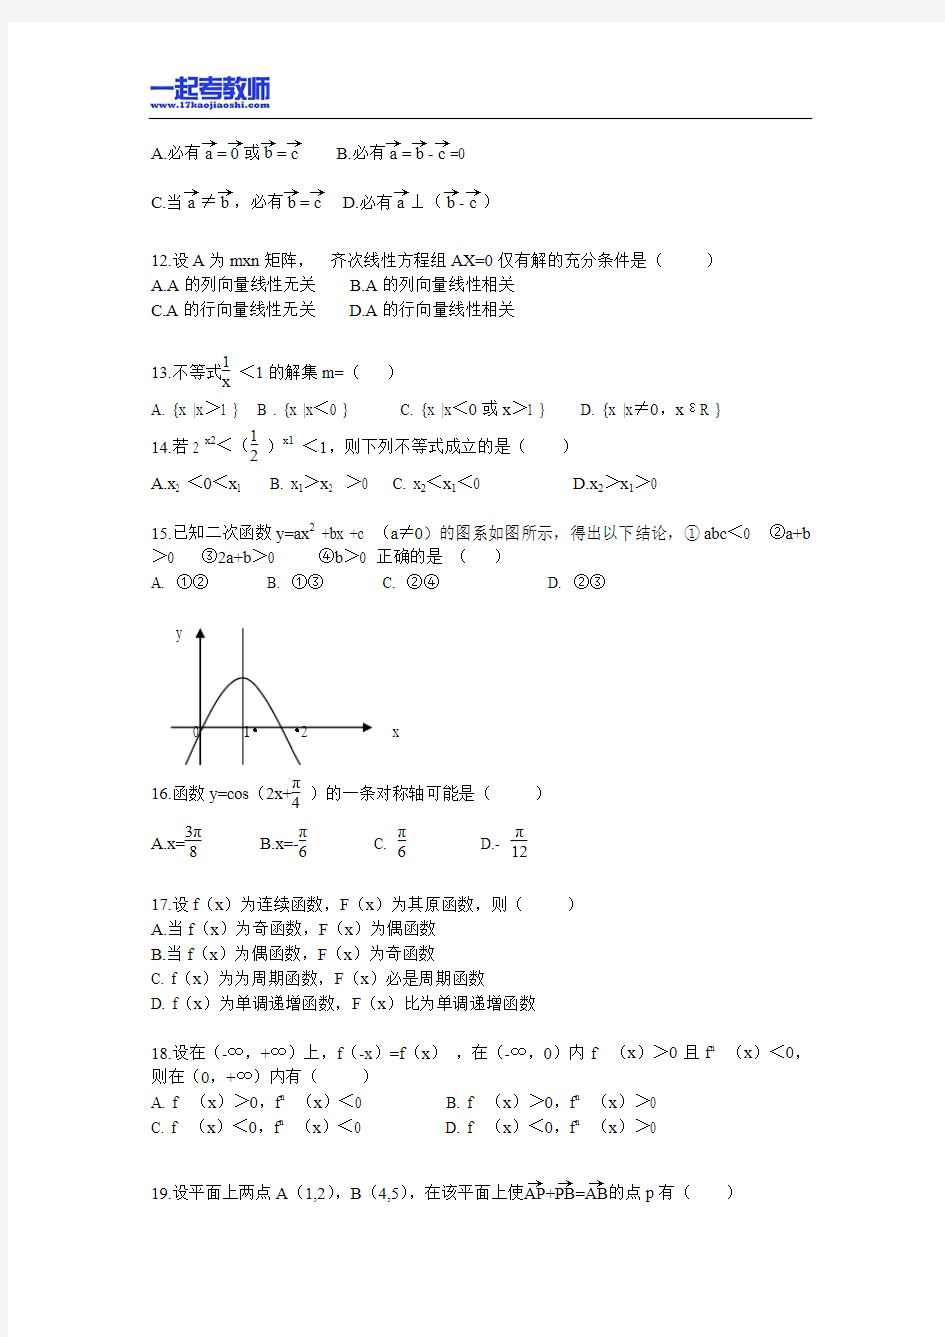 2011年 湖南 长沙 芙蓉区 教师招聘考试 小学学段 数学 真题答案解析